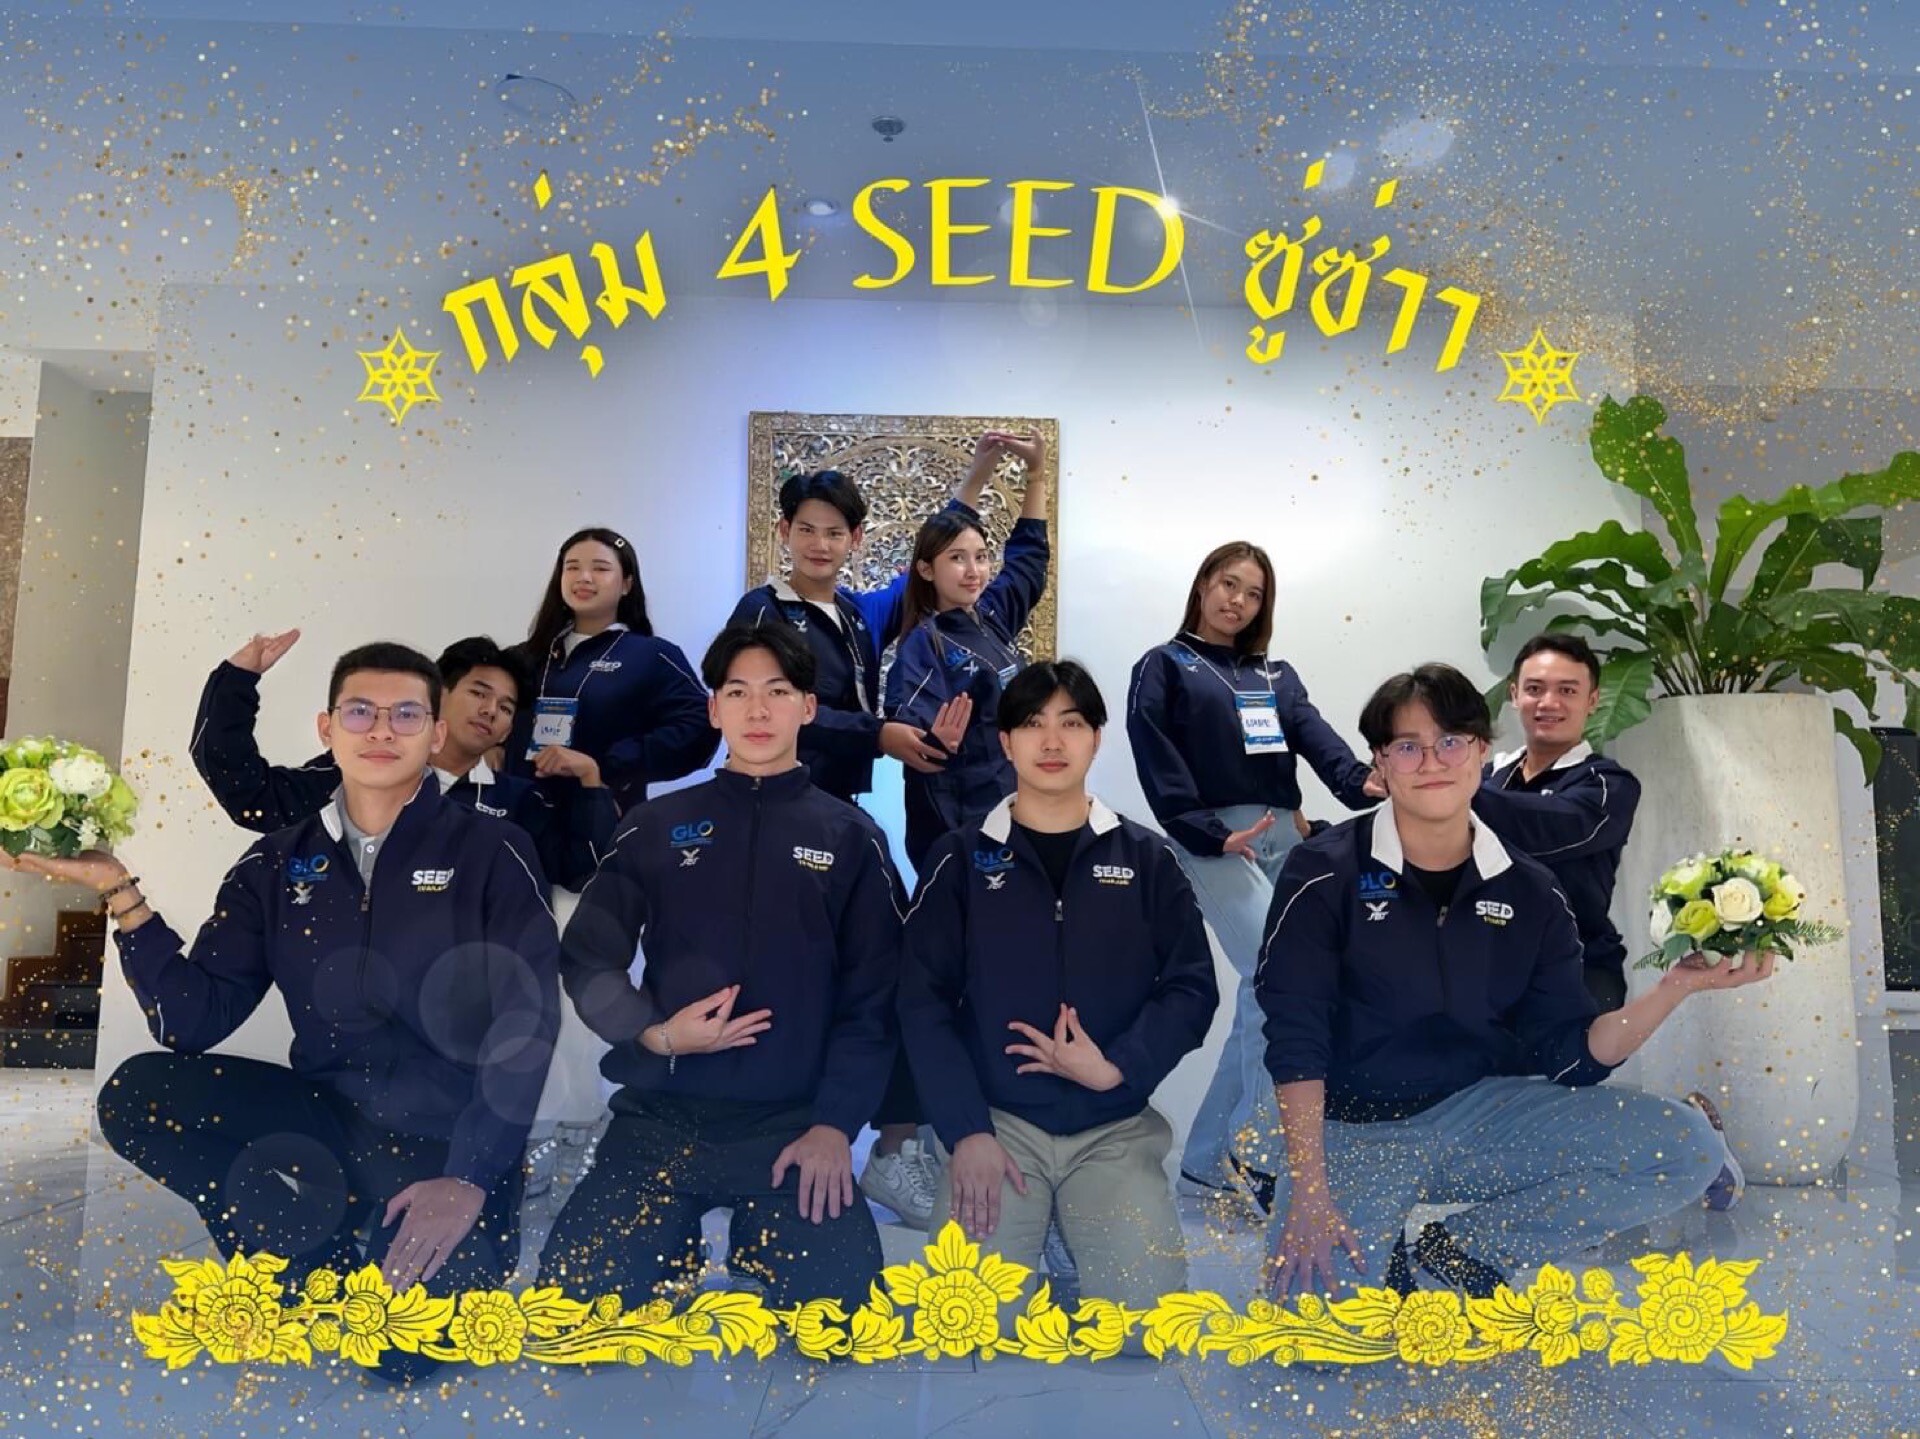 สร้างผู้นำเยาวชน พาท้องถิ่นสู่สากล กับโครงการ Seed Project ปี 3